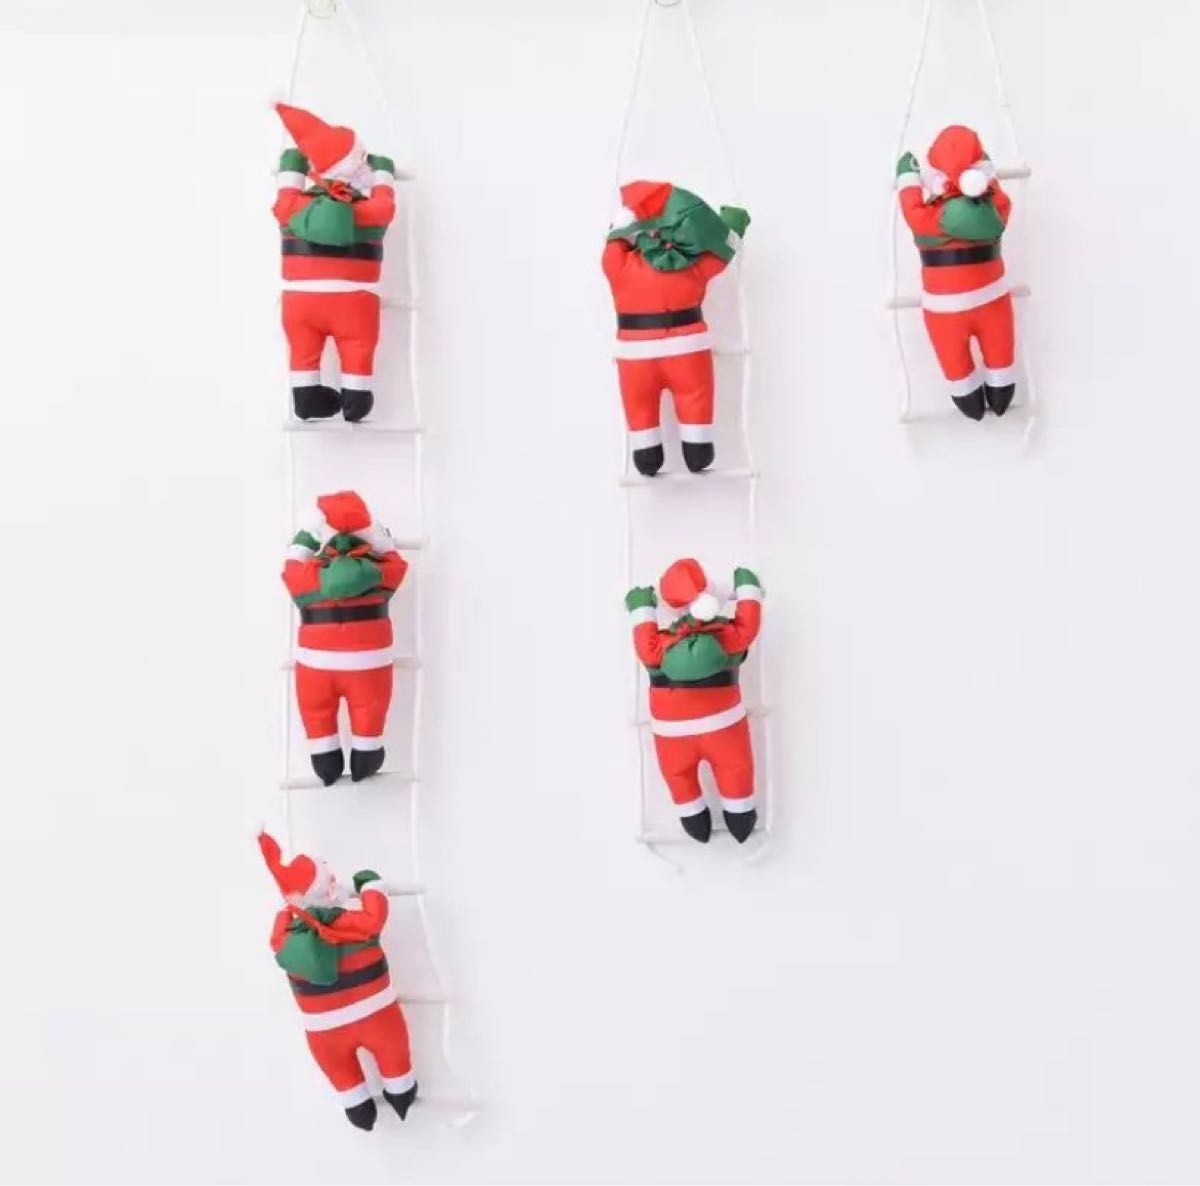 小人サンタクロース梯子ハシゴクリスマスオーナメントツリー飾り装飾ぬいぐるみお人形